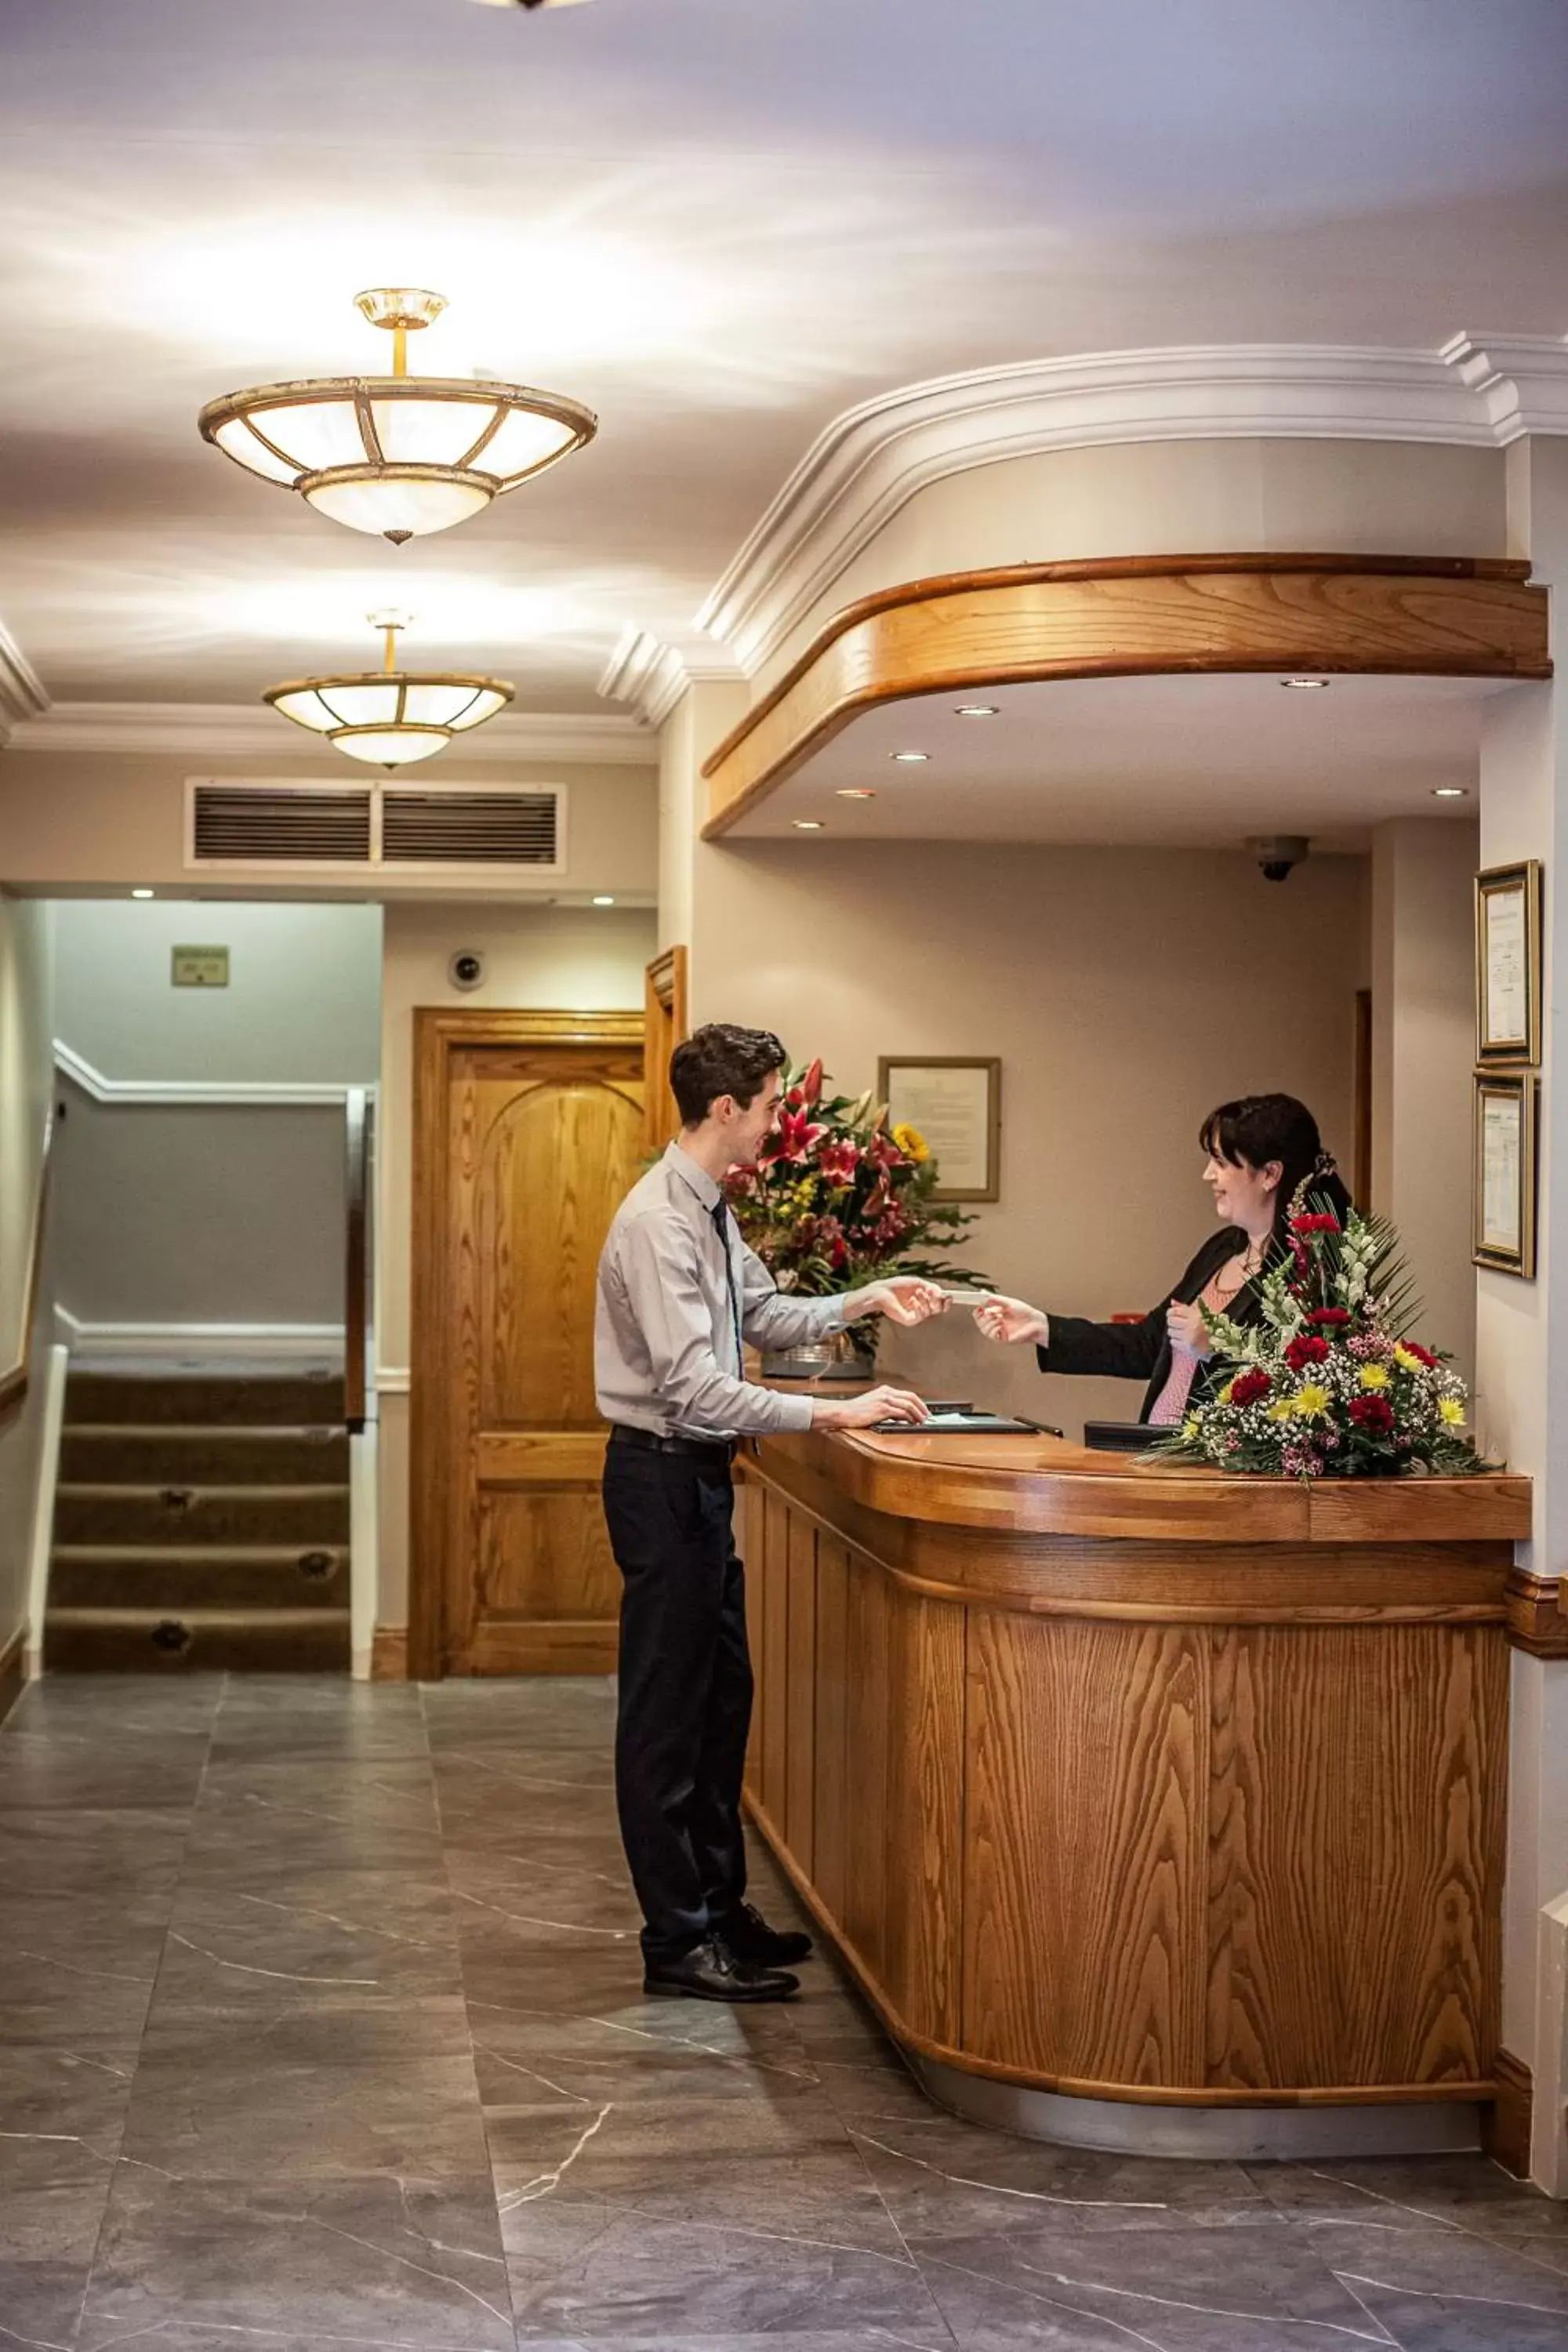 Staff in Gullane's Hotel